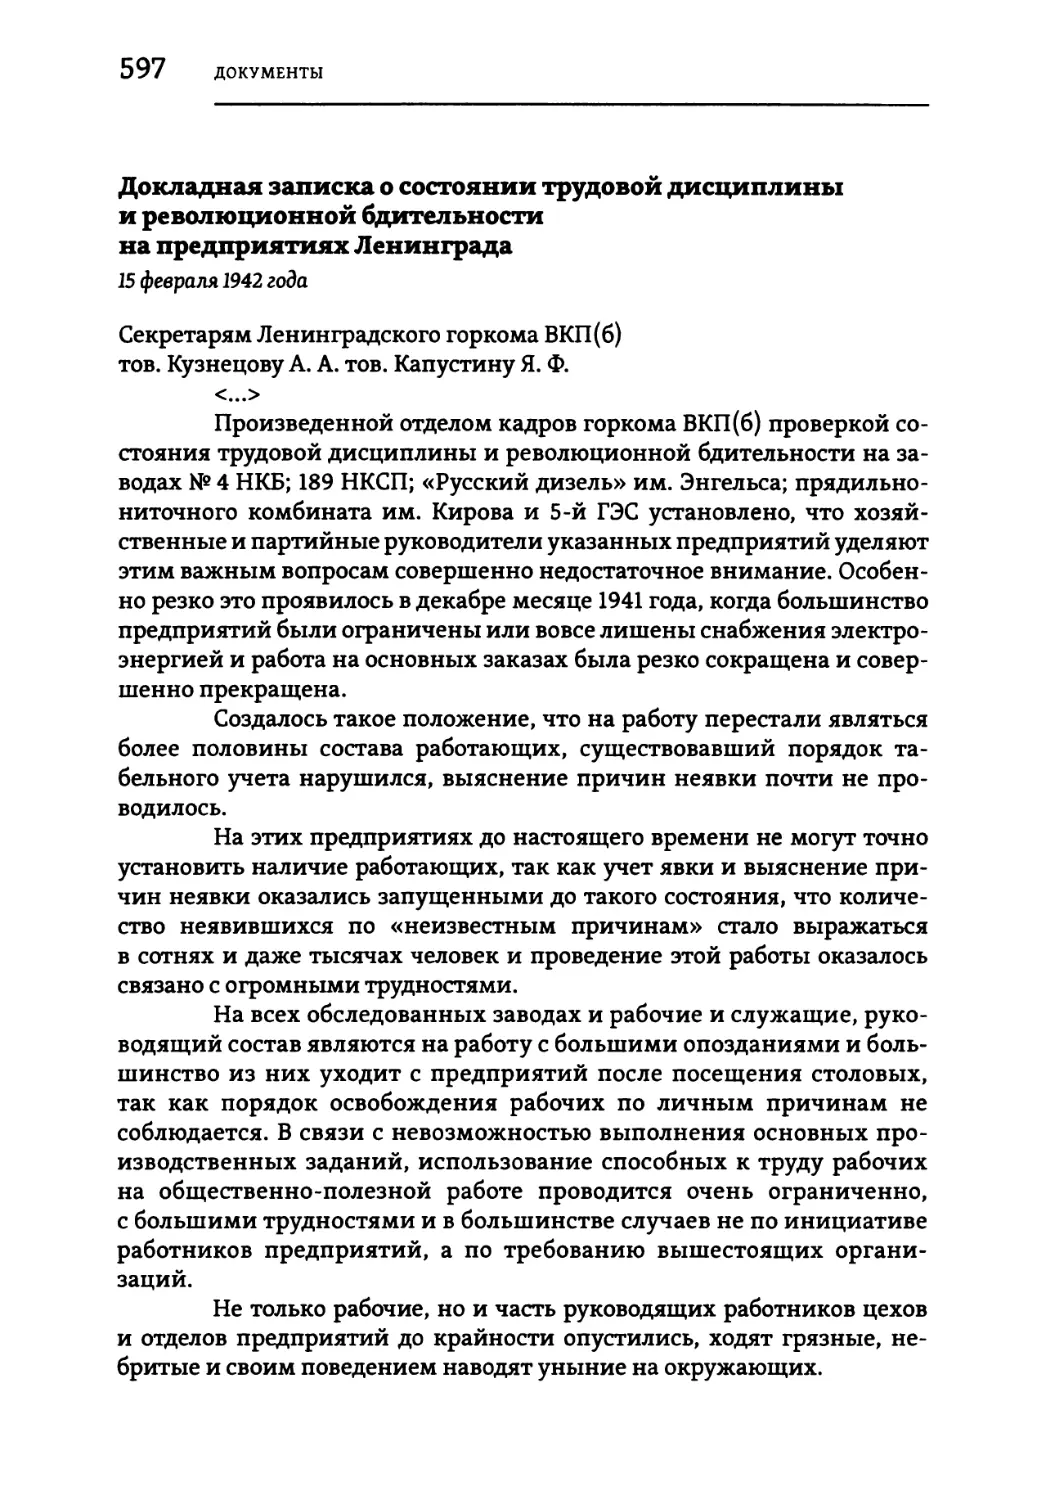 Докладная записка о состоянии трудовой дисциплины и революционной бдительности на предприятиях Ленинграда